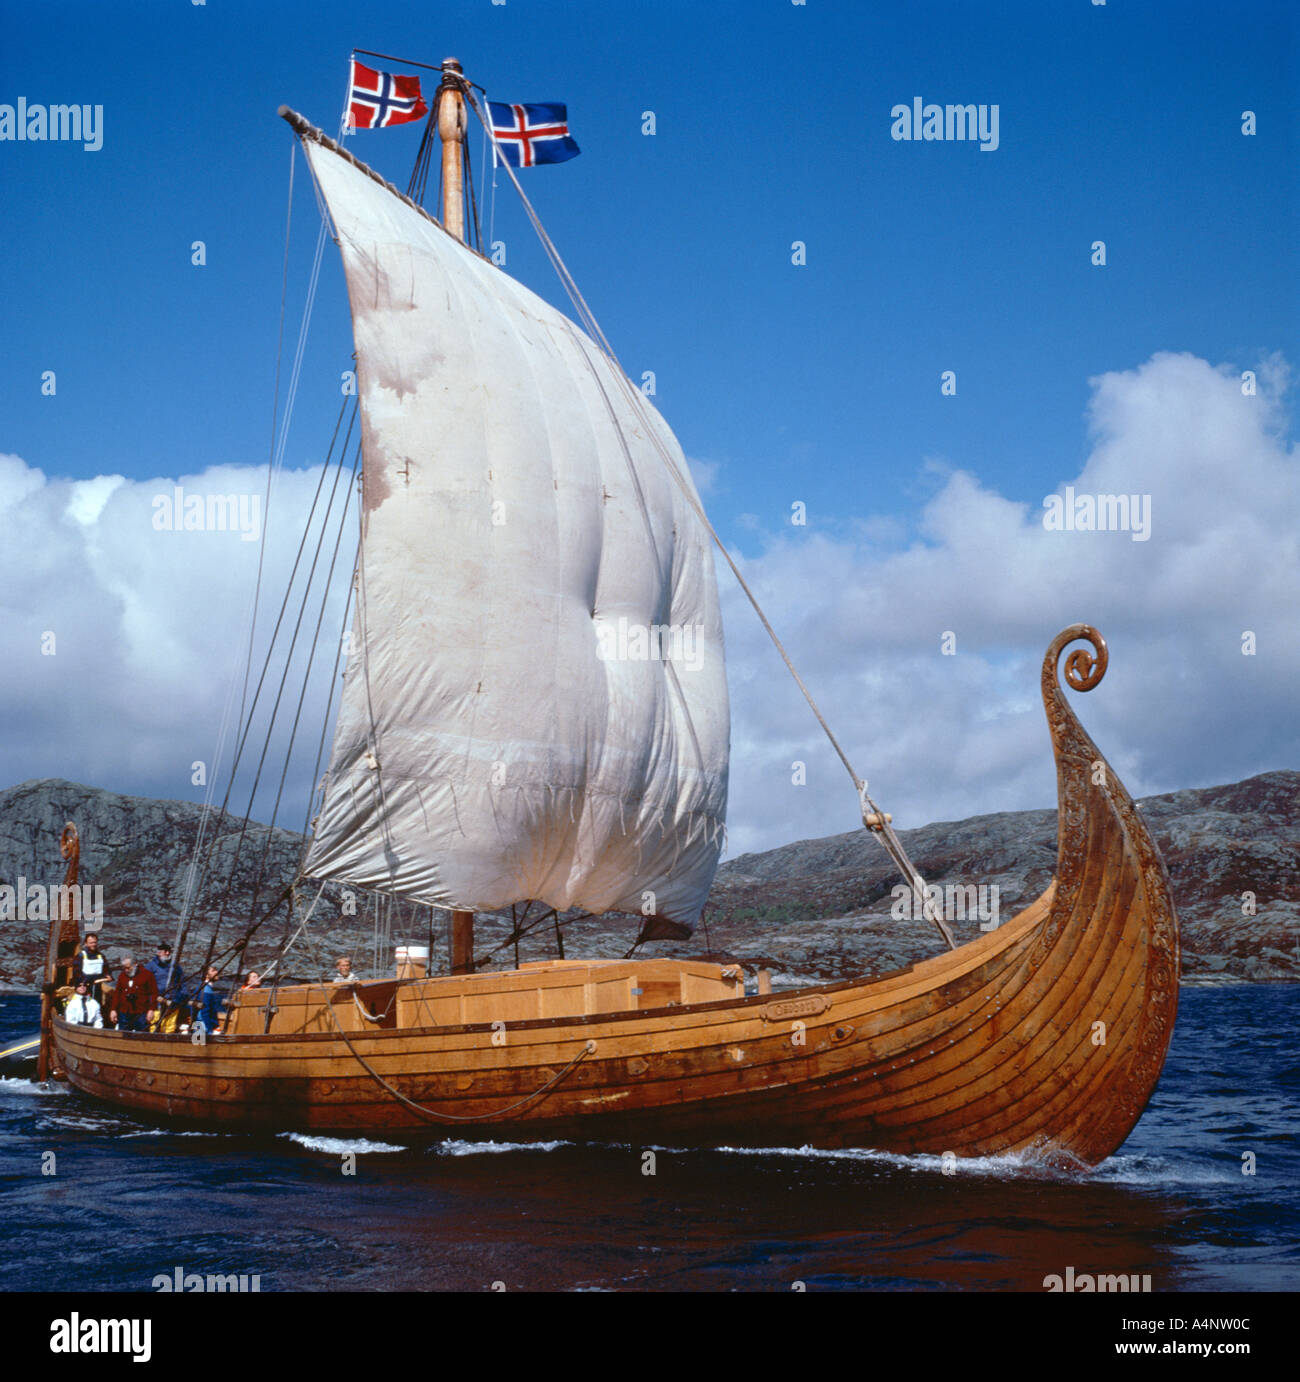 Bateau viking Oseberg réplique Norvège Norvège Scandinavie Europe de l'Ouest Banque D'Images